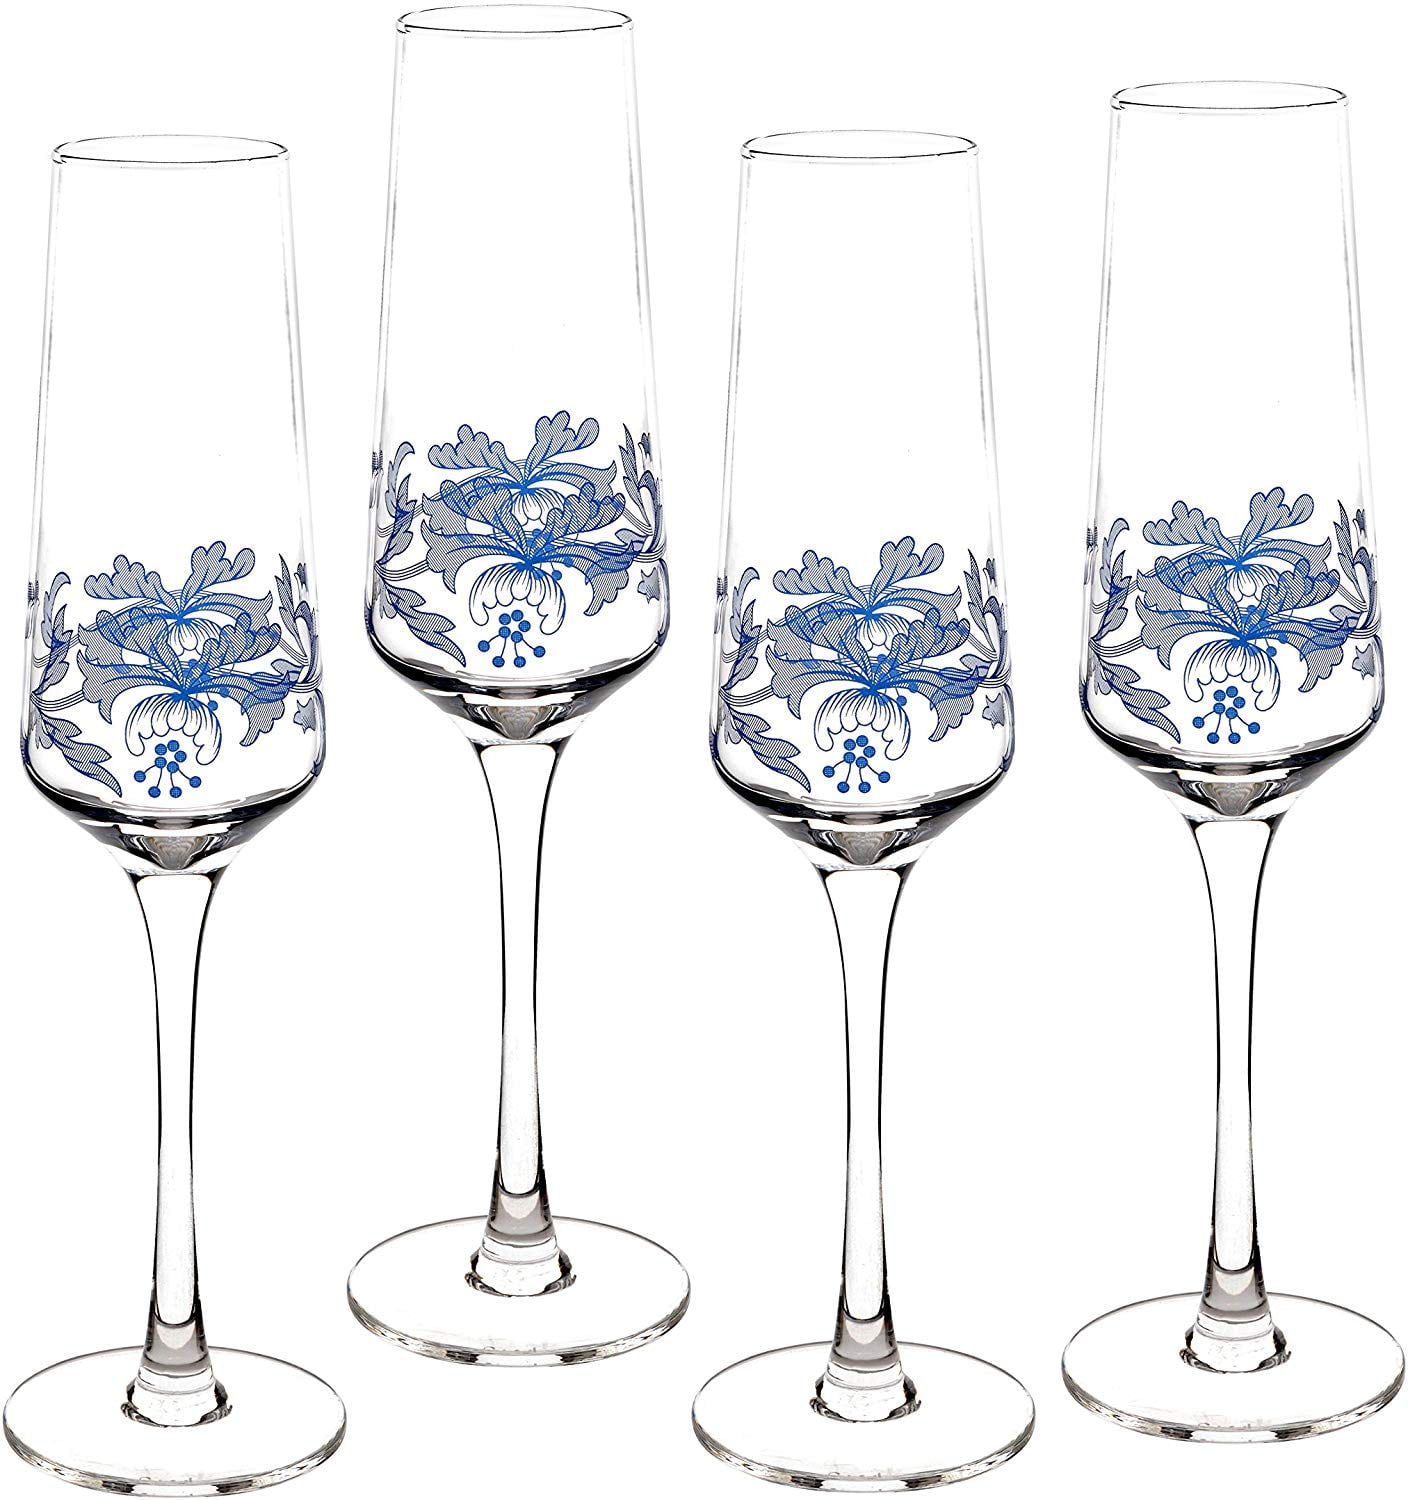 Spode Blue Italian Glassware Champagne Flutes 8 oz - Set of 4 - Blue White  - New 